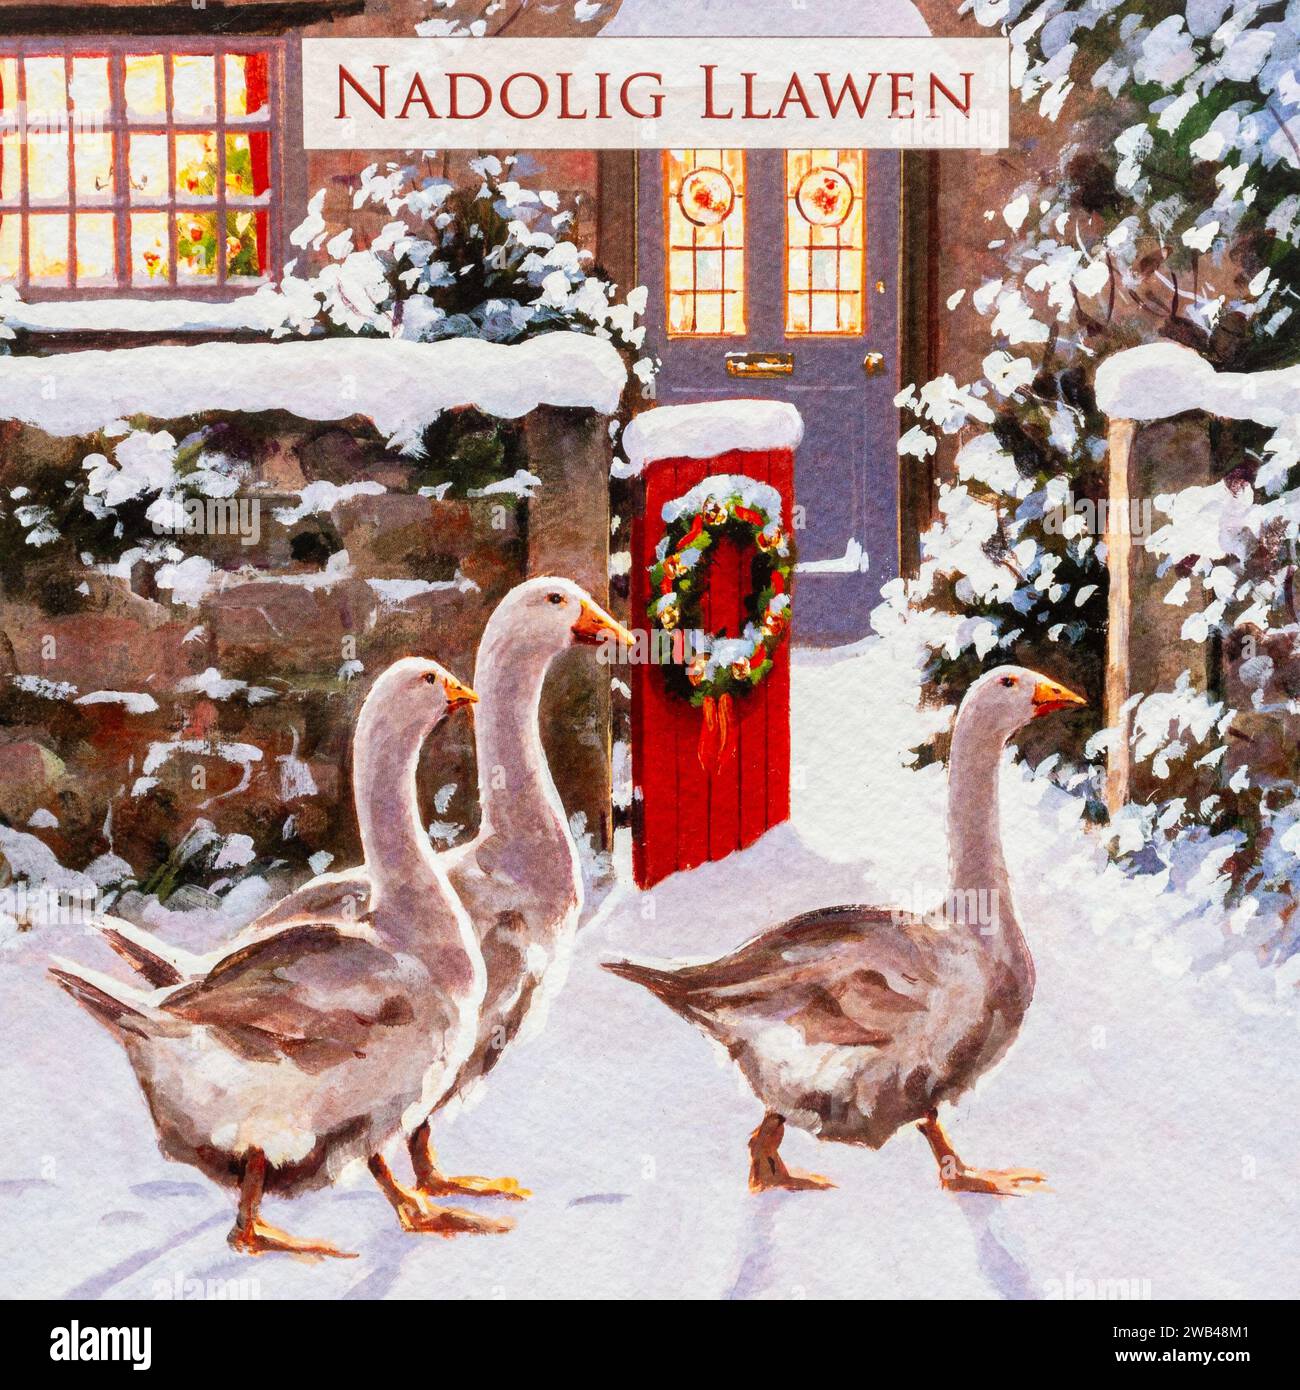 Nadolig Llawen, walisische Begrüßung bedeutet frohe Weihnachten auf einer Weihnachtskarte, Wales, Großbritannien Stockfoto